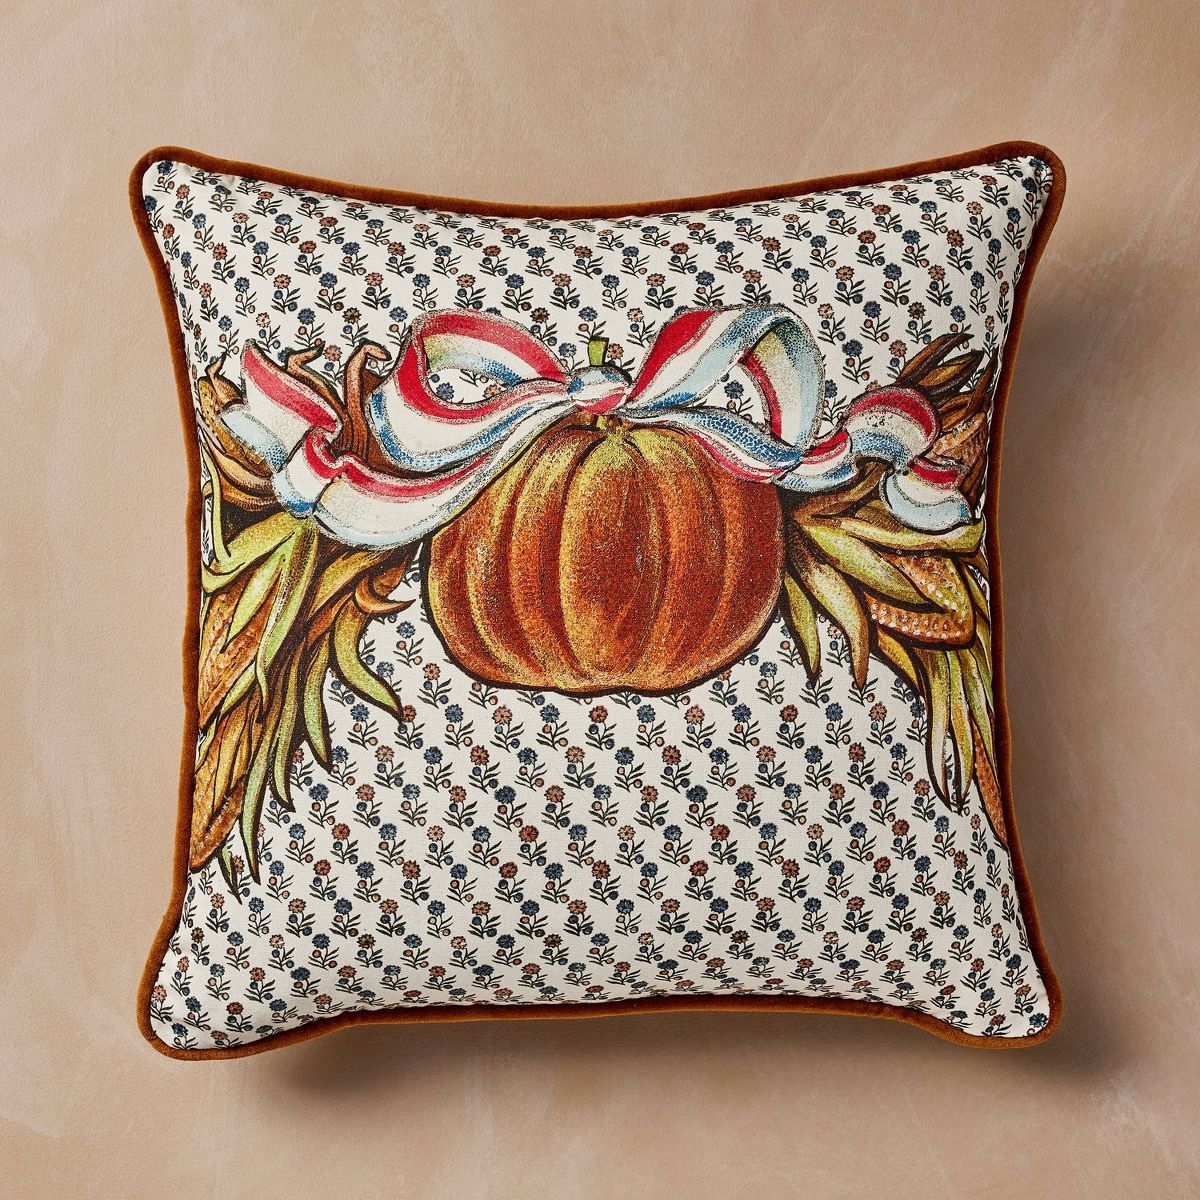 18" Square Pillow Fall Pumpkin - John Derian for Target | Target